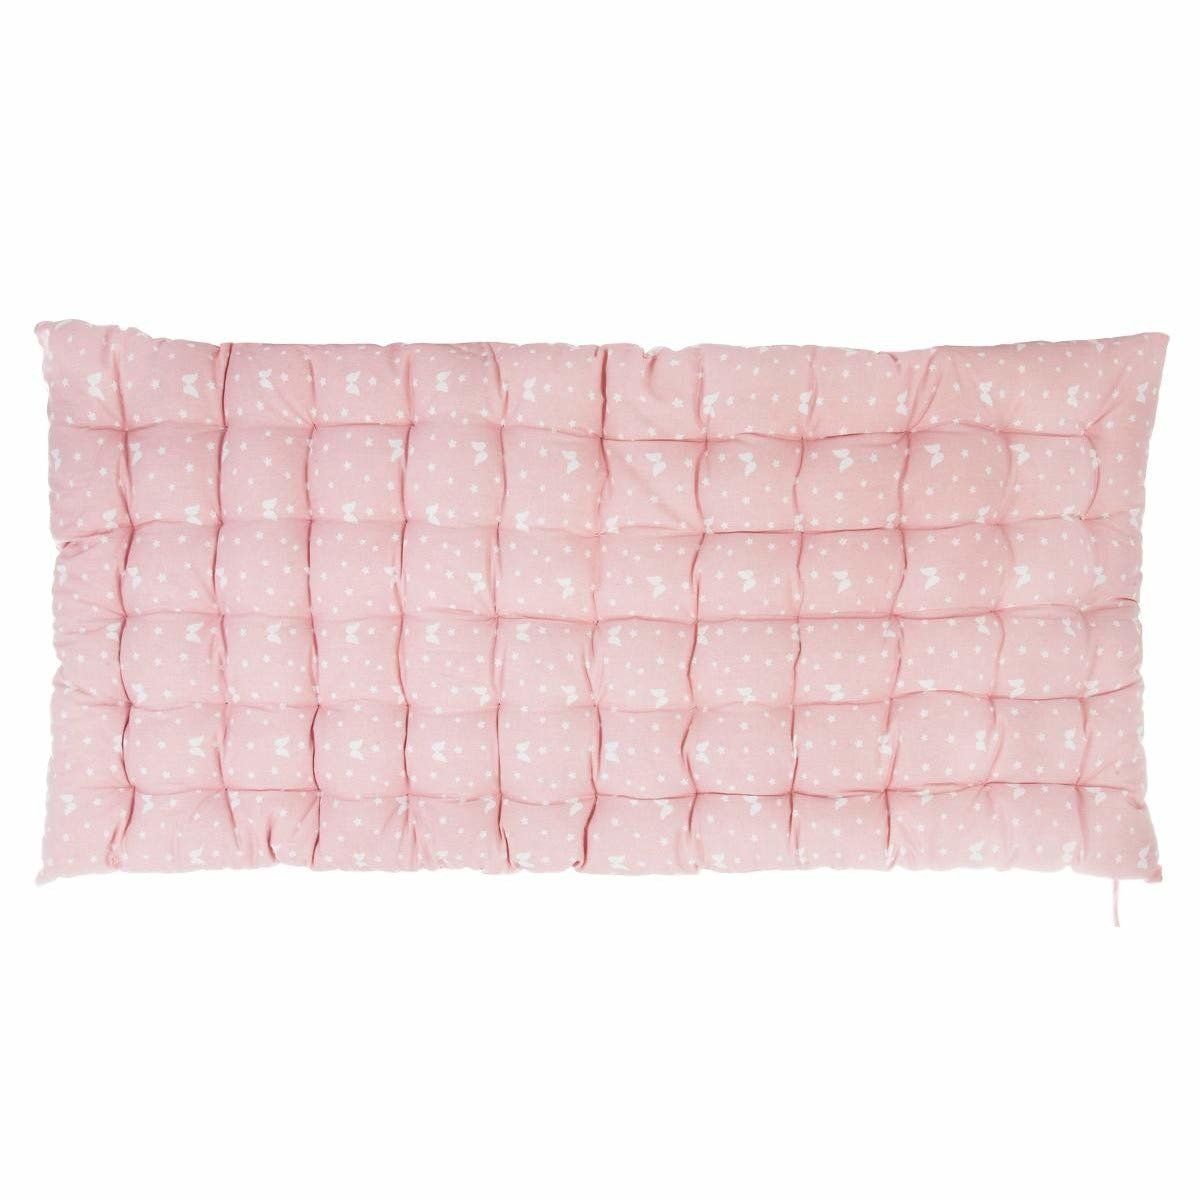 Atmosphera Růžová nafukovací matrace z bavlny, 120x60 cm - EDAXO.CZ s.r.o.